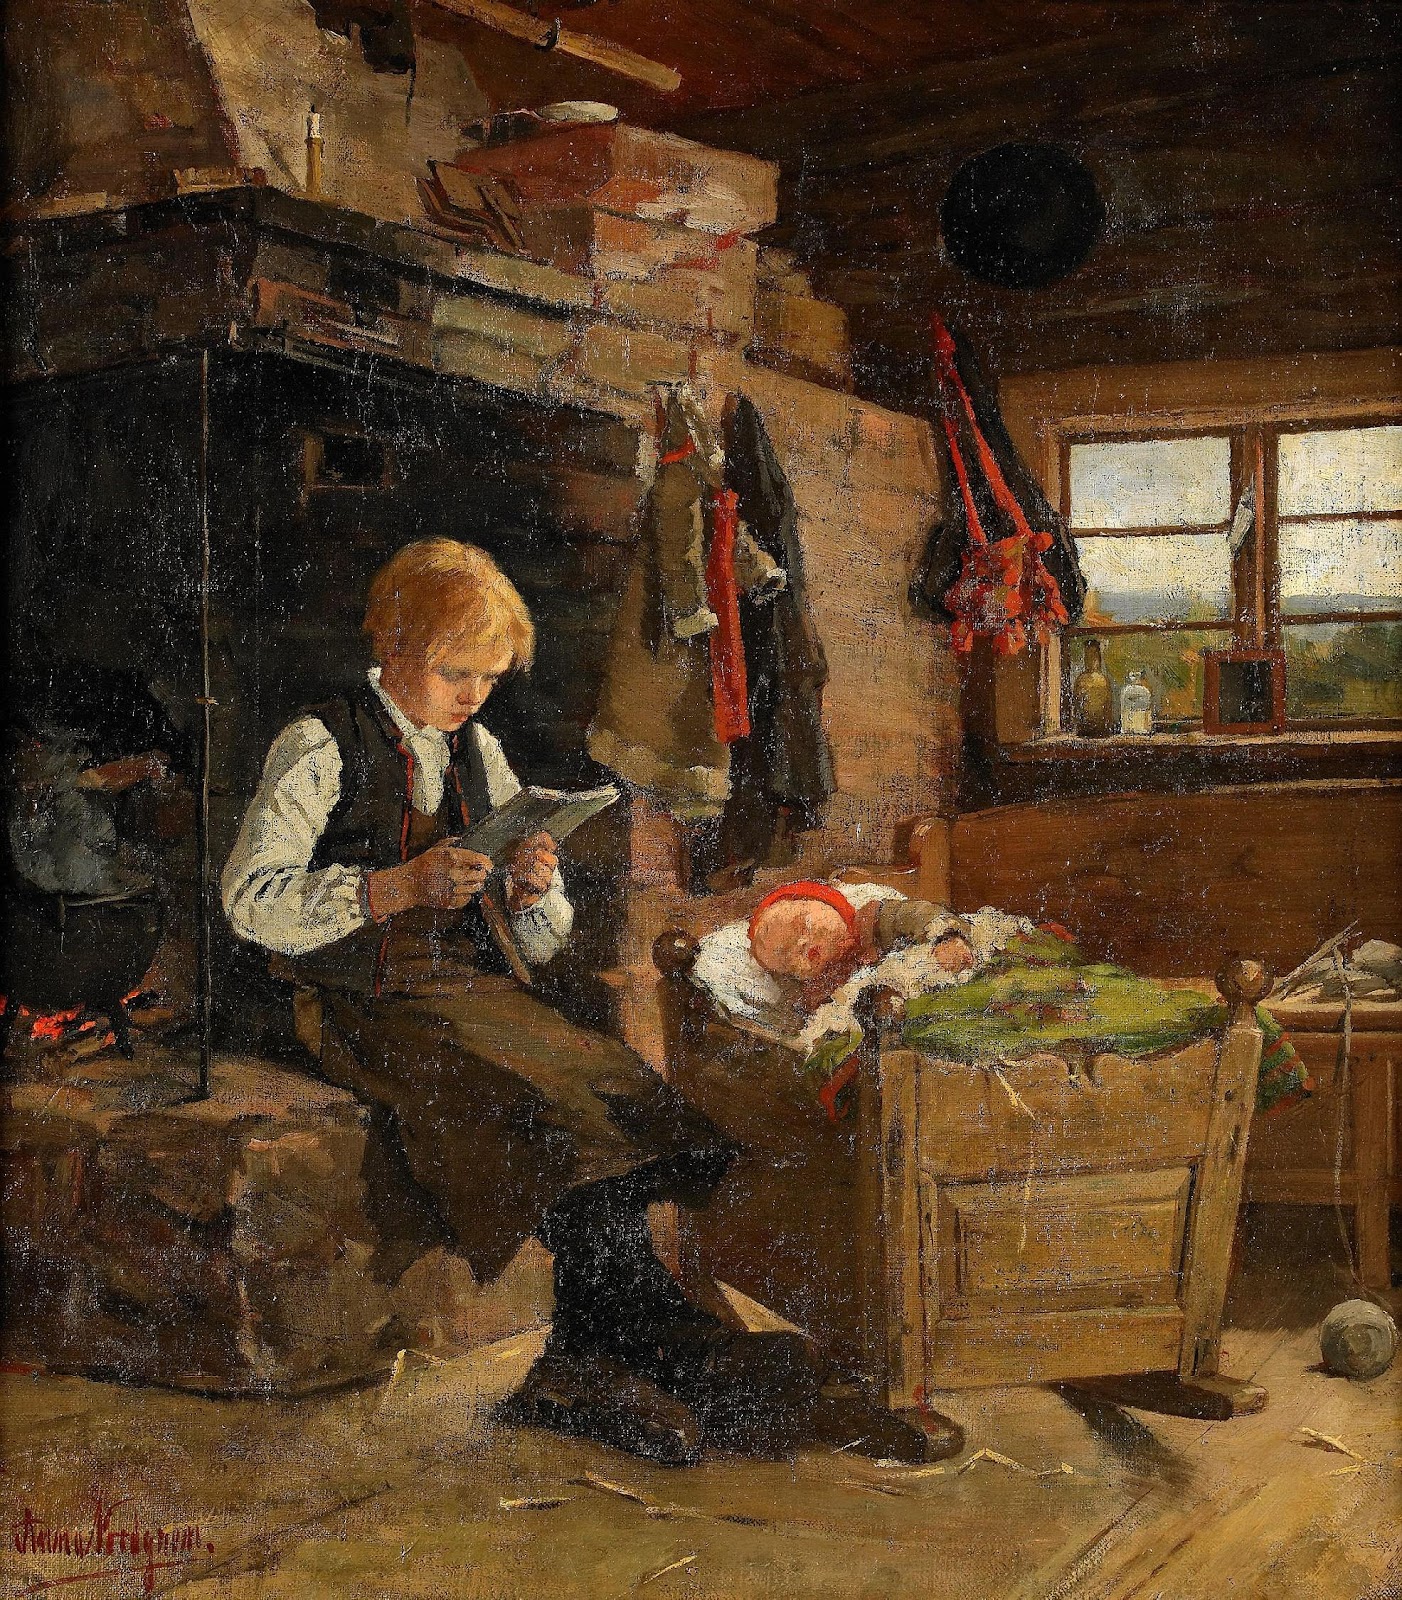 アンナ・ノルドグレンの『暖炉に読書する少年がいる伝統的な室内』